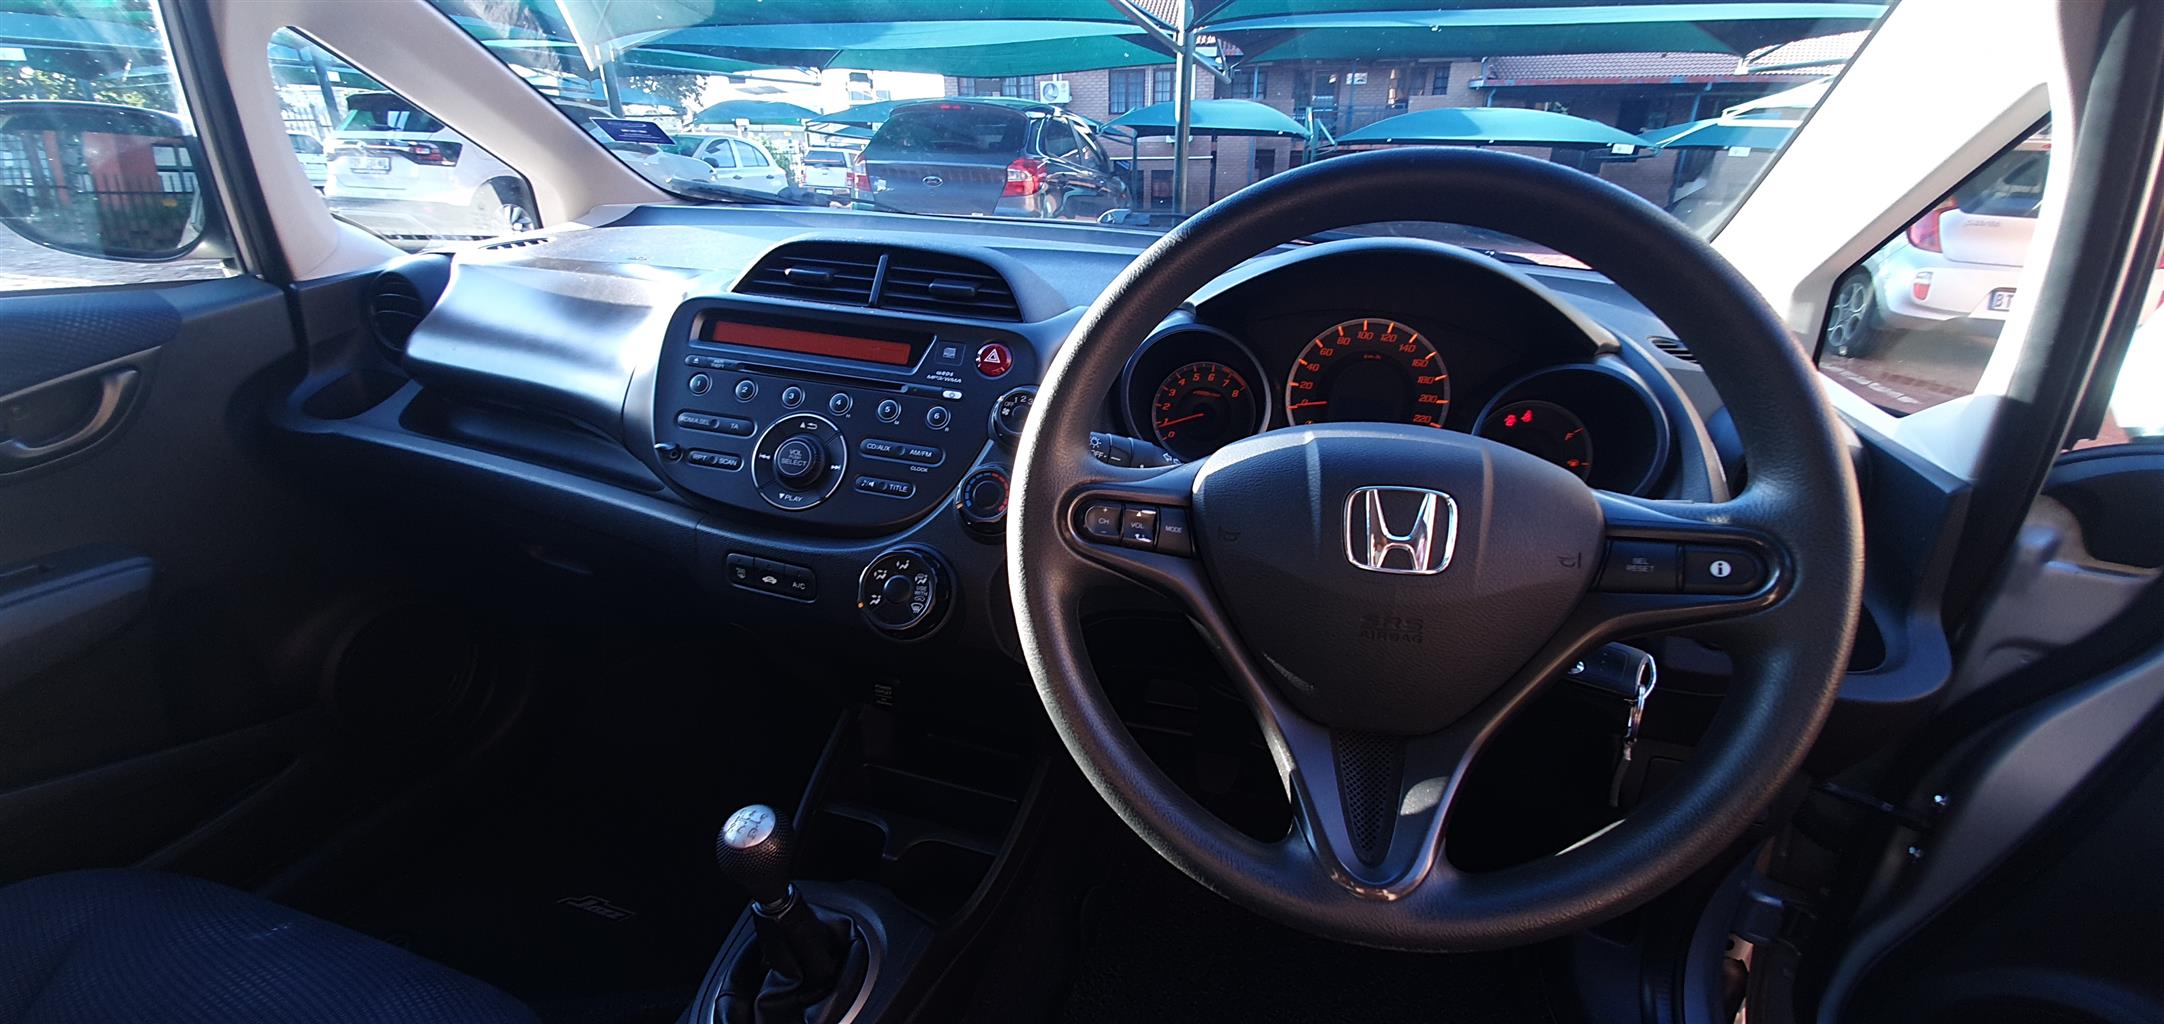 Honda Jazz - 1.3 Comfort, 2013